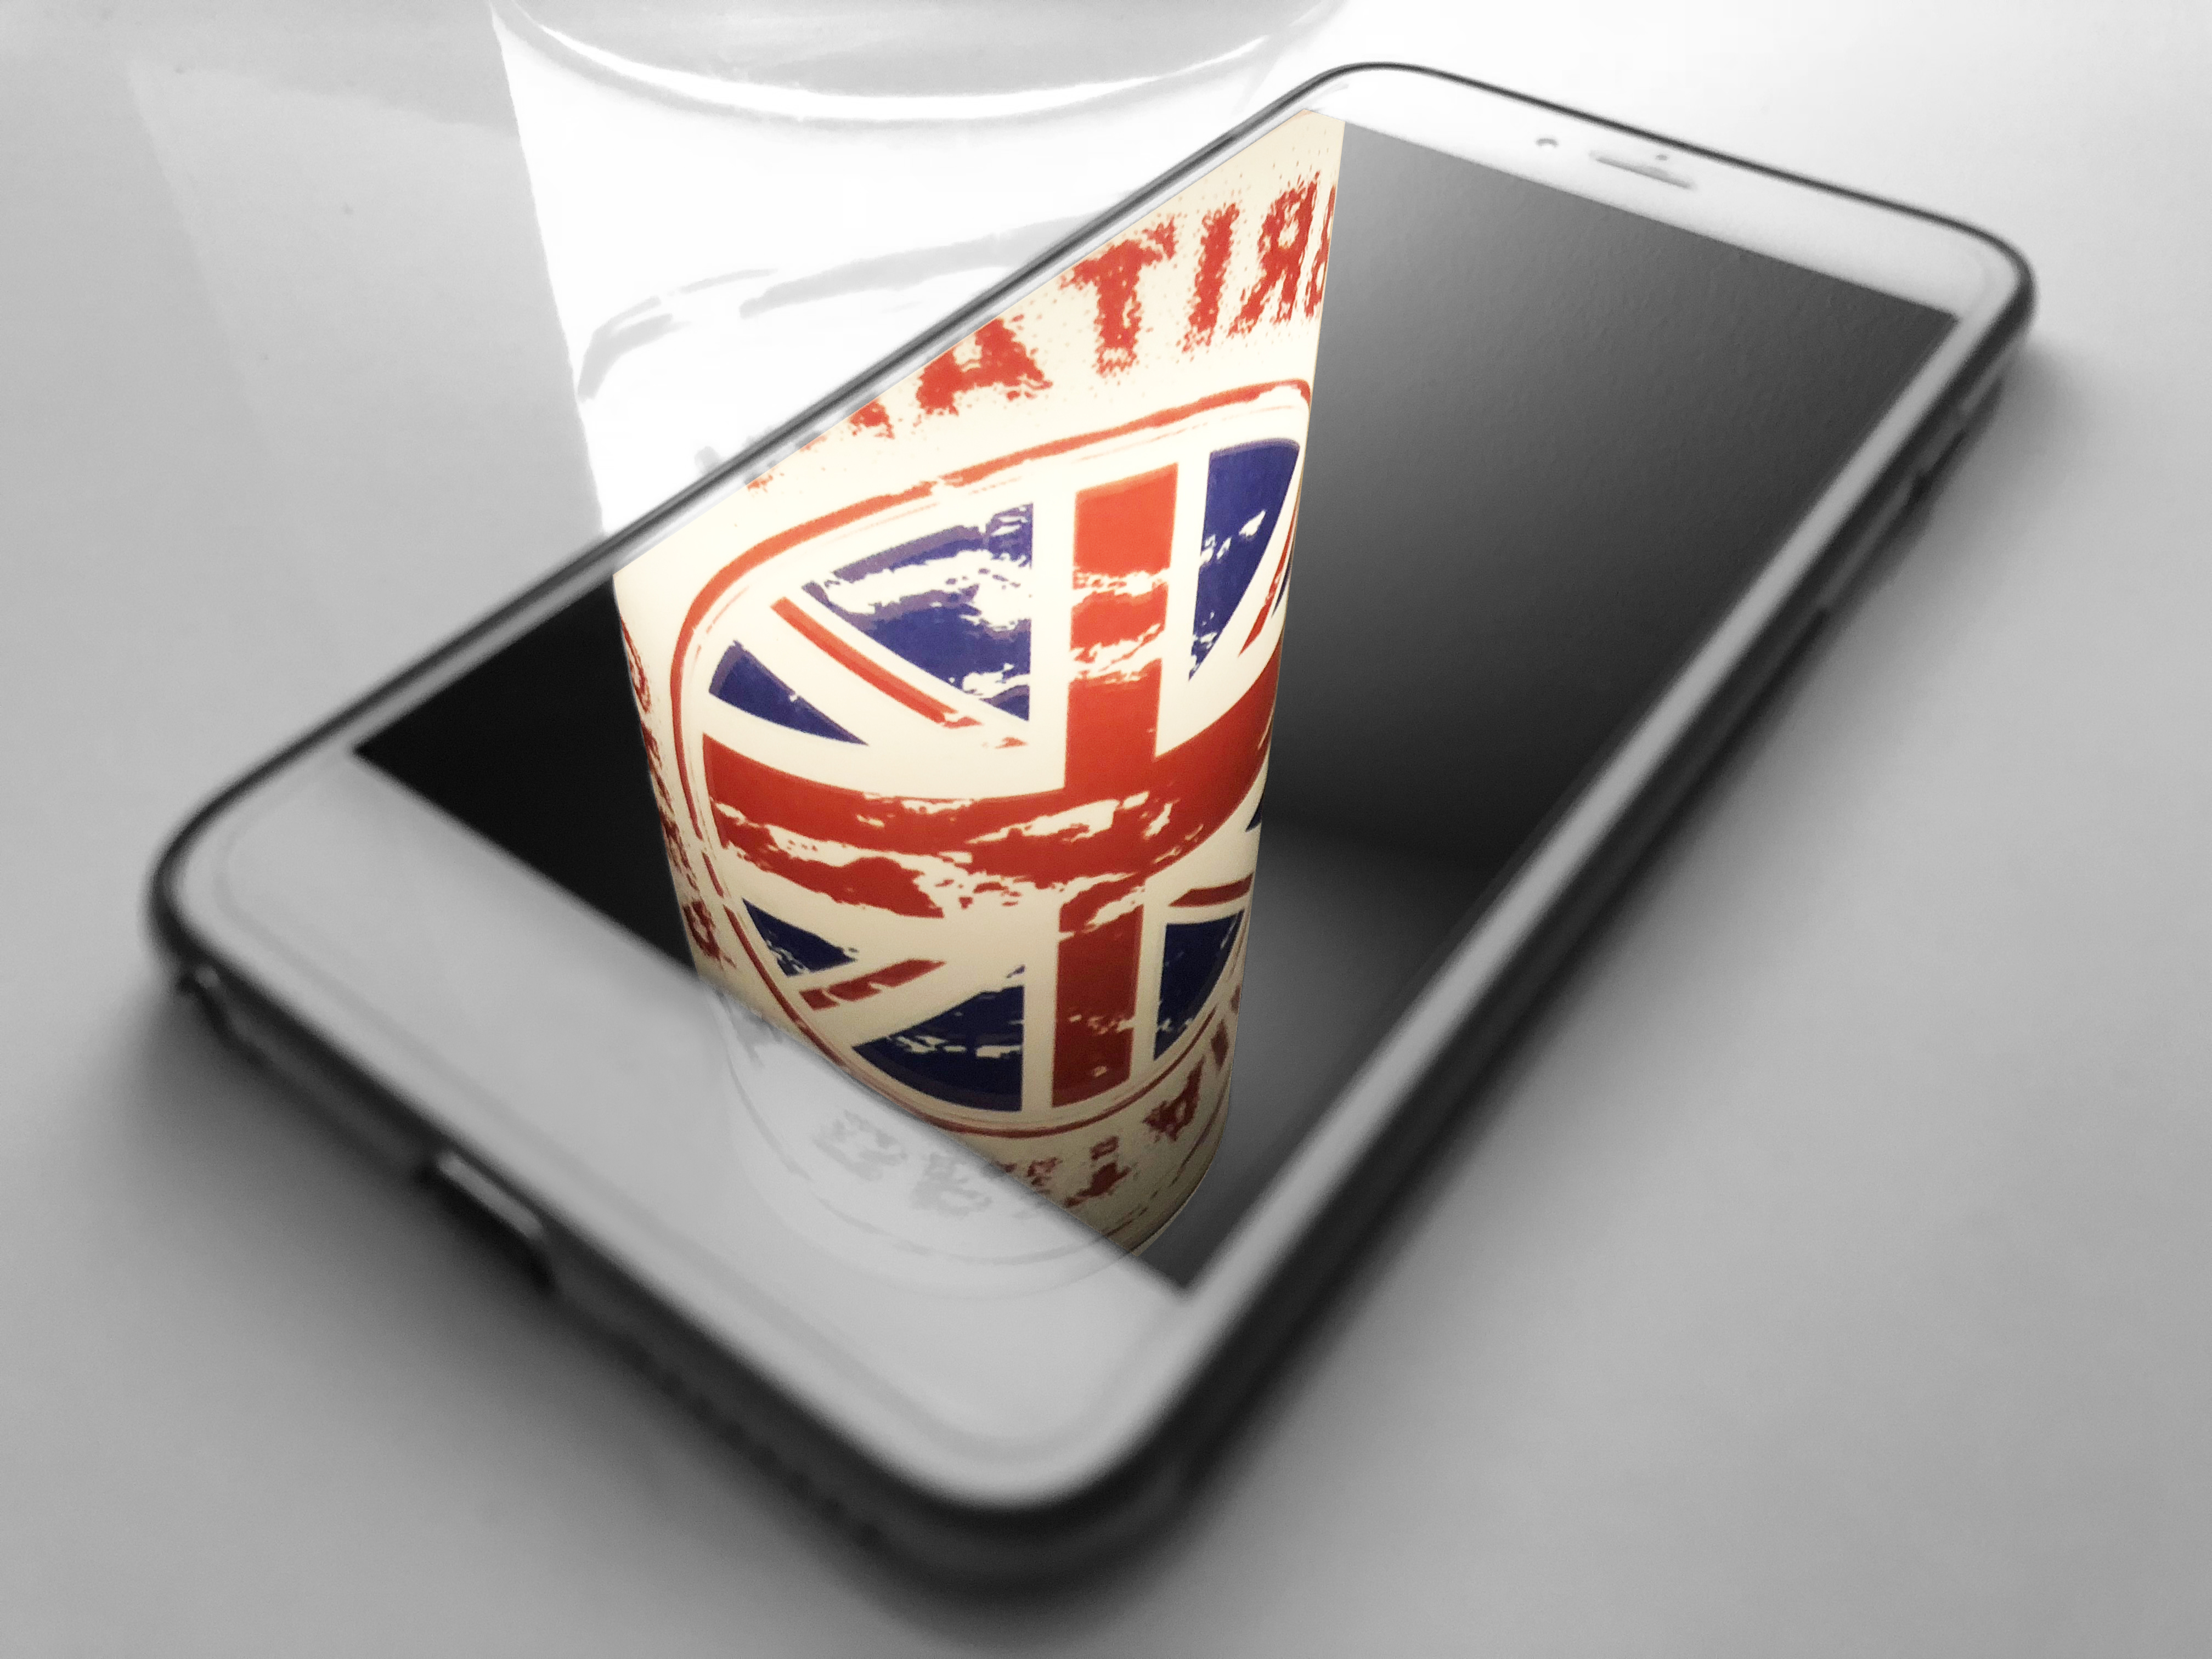 Mobilní telefon s britskou vlajkou